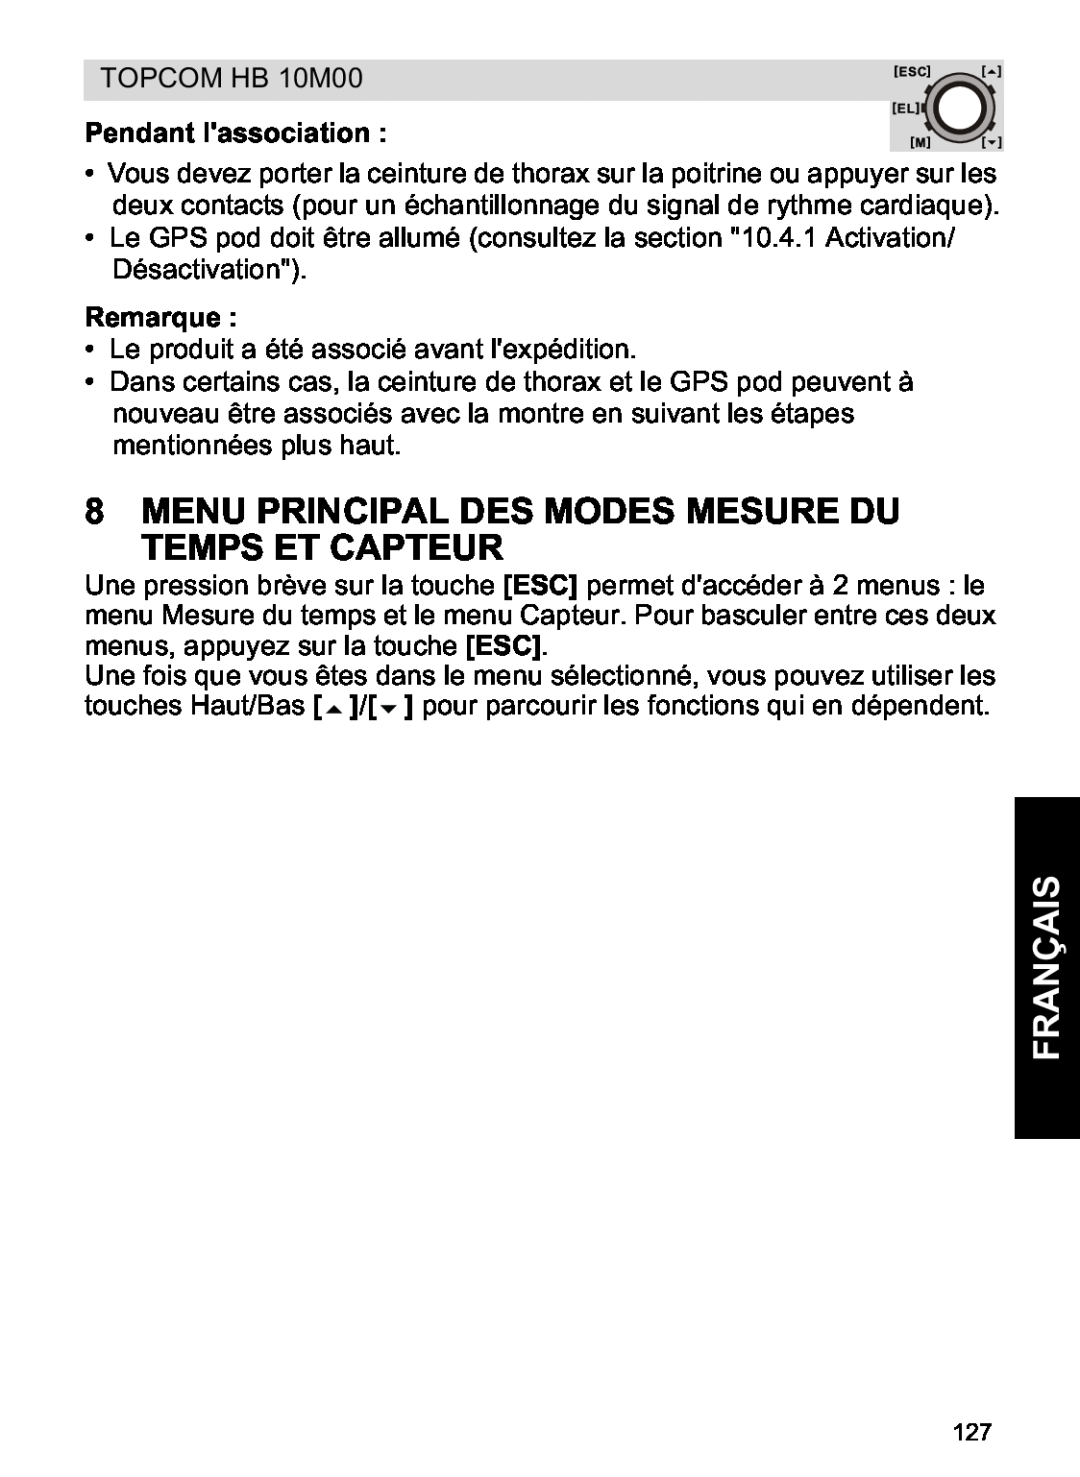 Topcom HB 10M00 manual Menu Principal Des Modes Mesure Du Temps Et Capteur, Pendant lassociation, Remarque, Français 